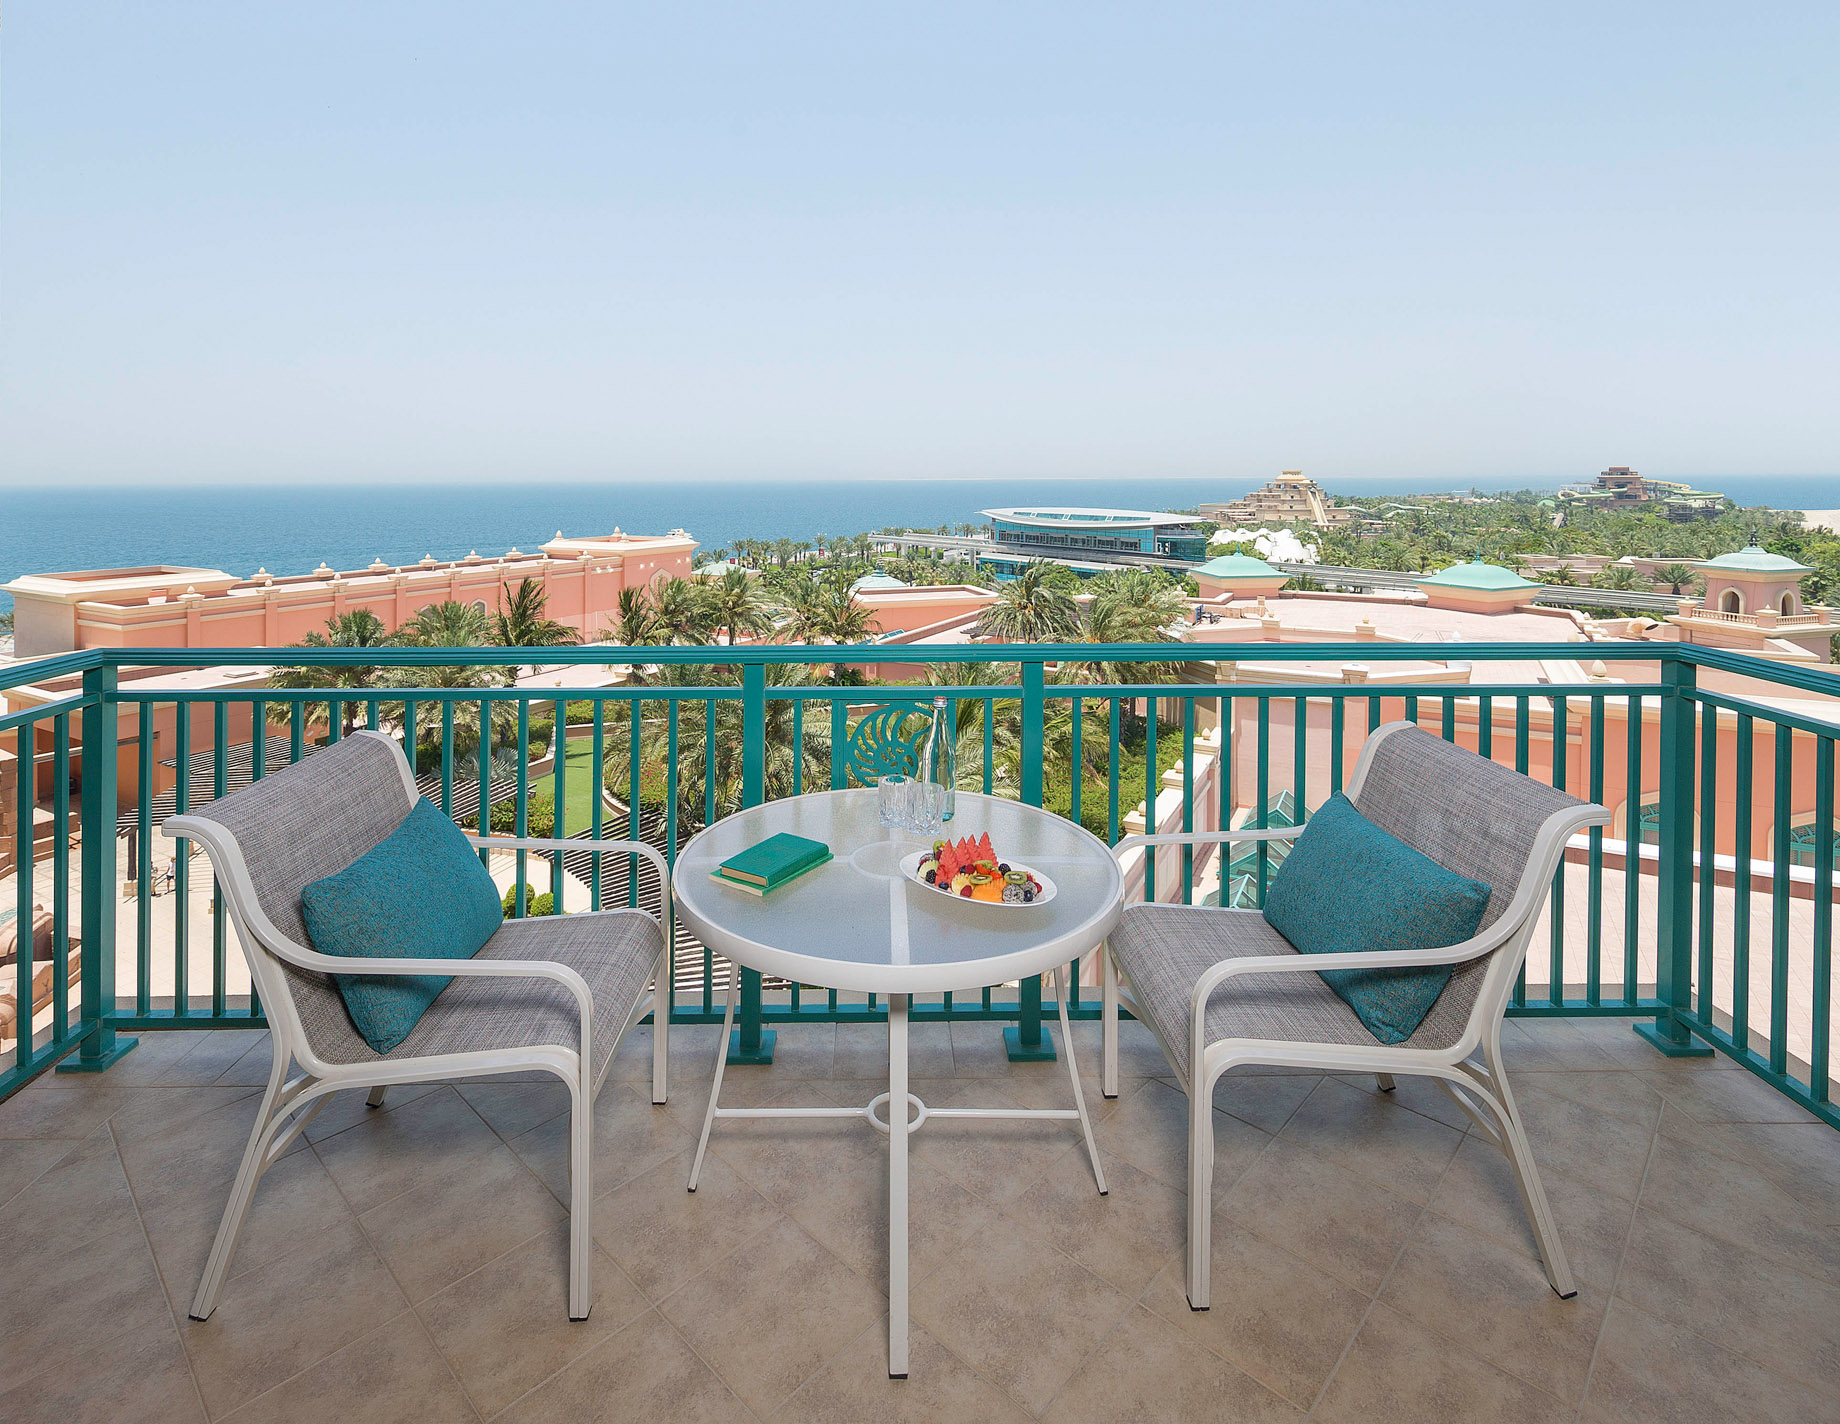 Atlantis The Palm Resort – Crescent Rd, Dubai, UAE – Executive Club Suite Balcony